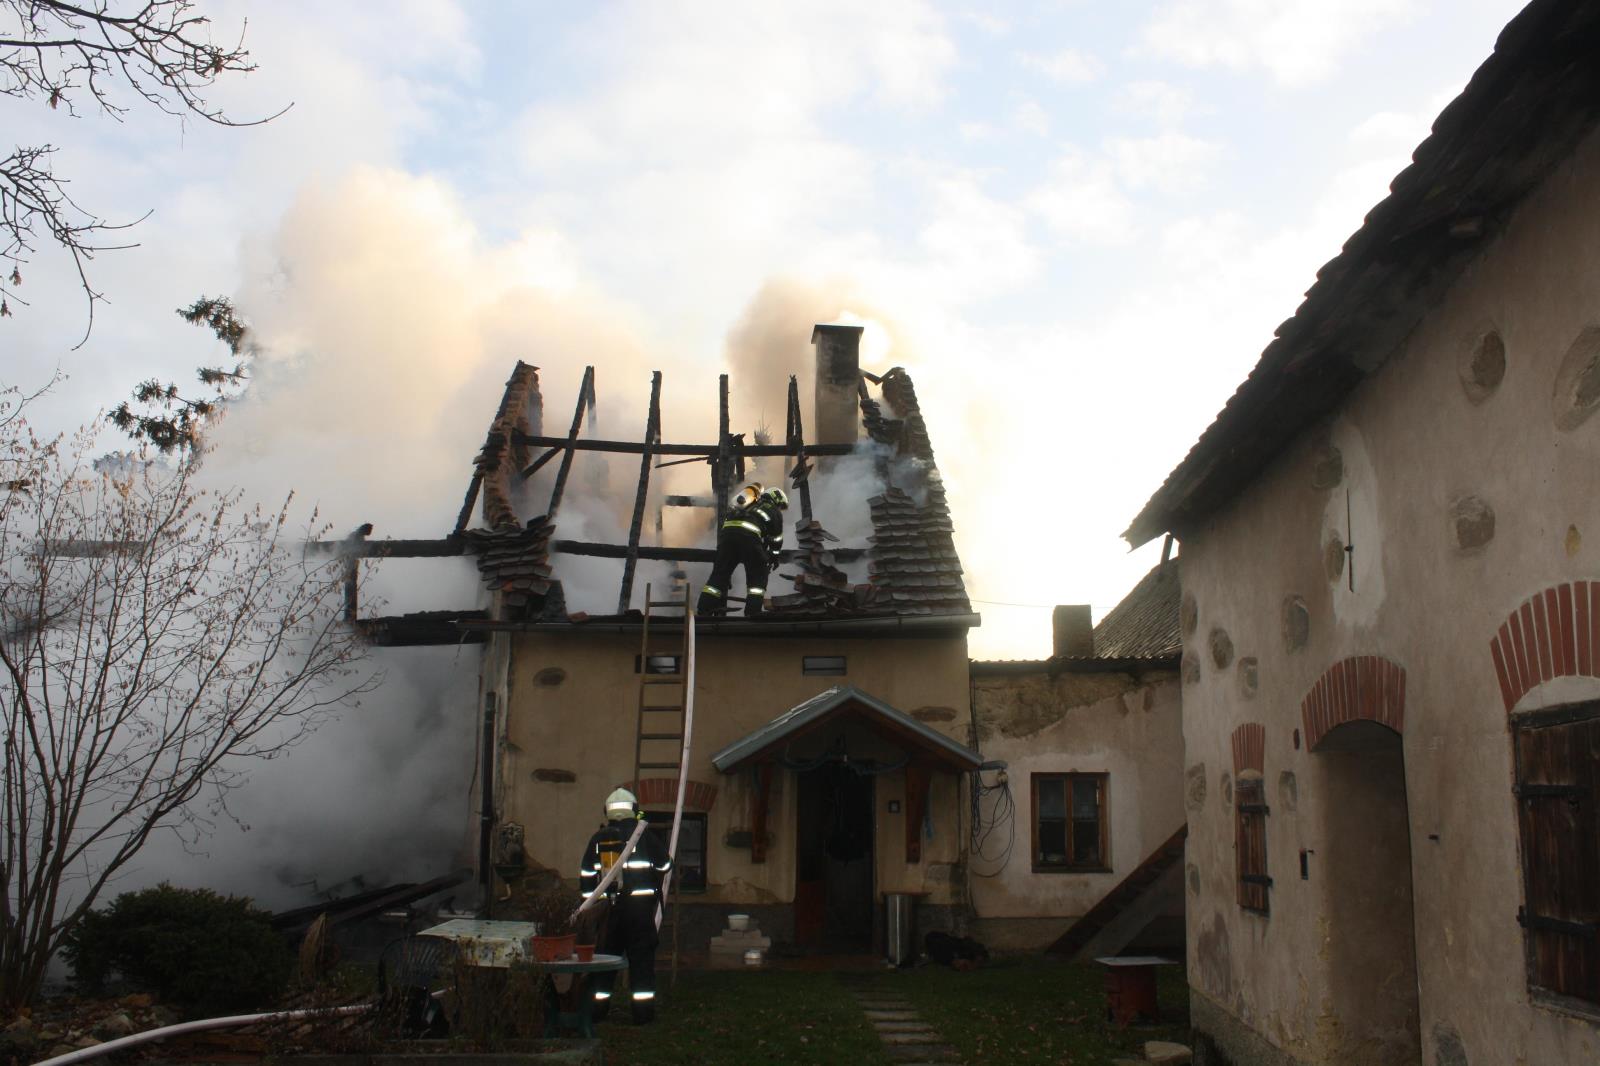 Požár zemědělského stavení, Radošovice - 9. 12. 2017 (6).JPG